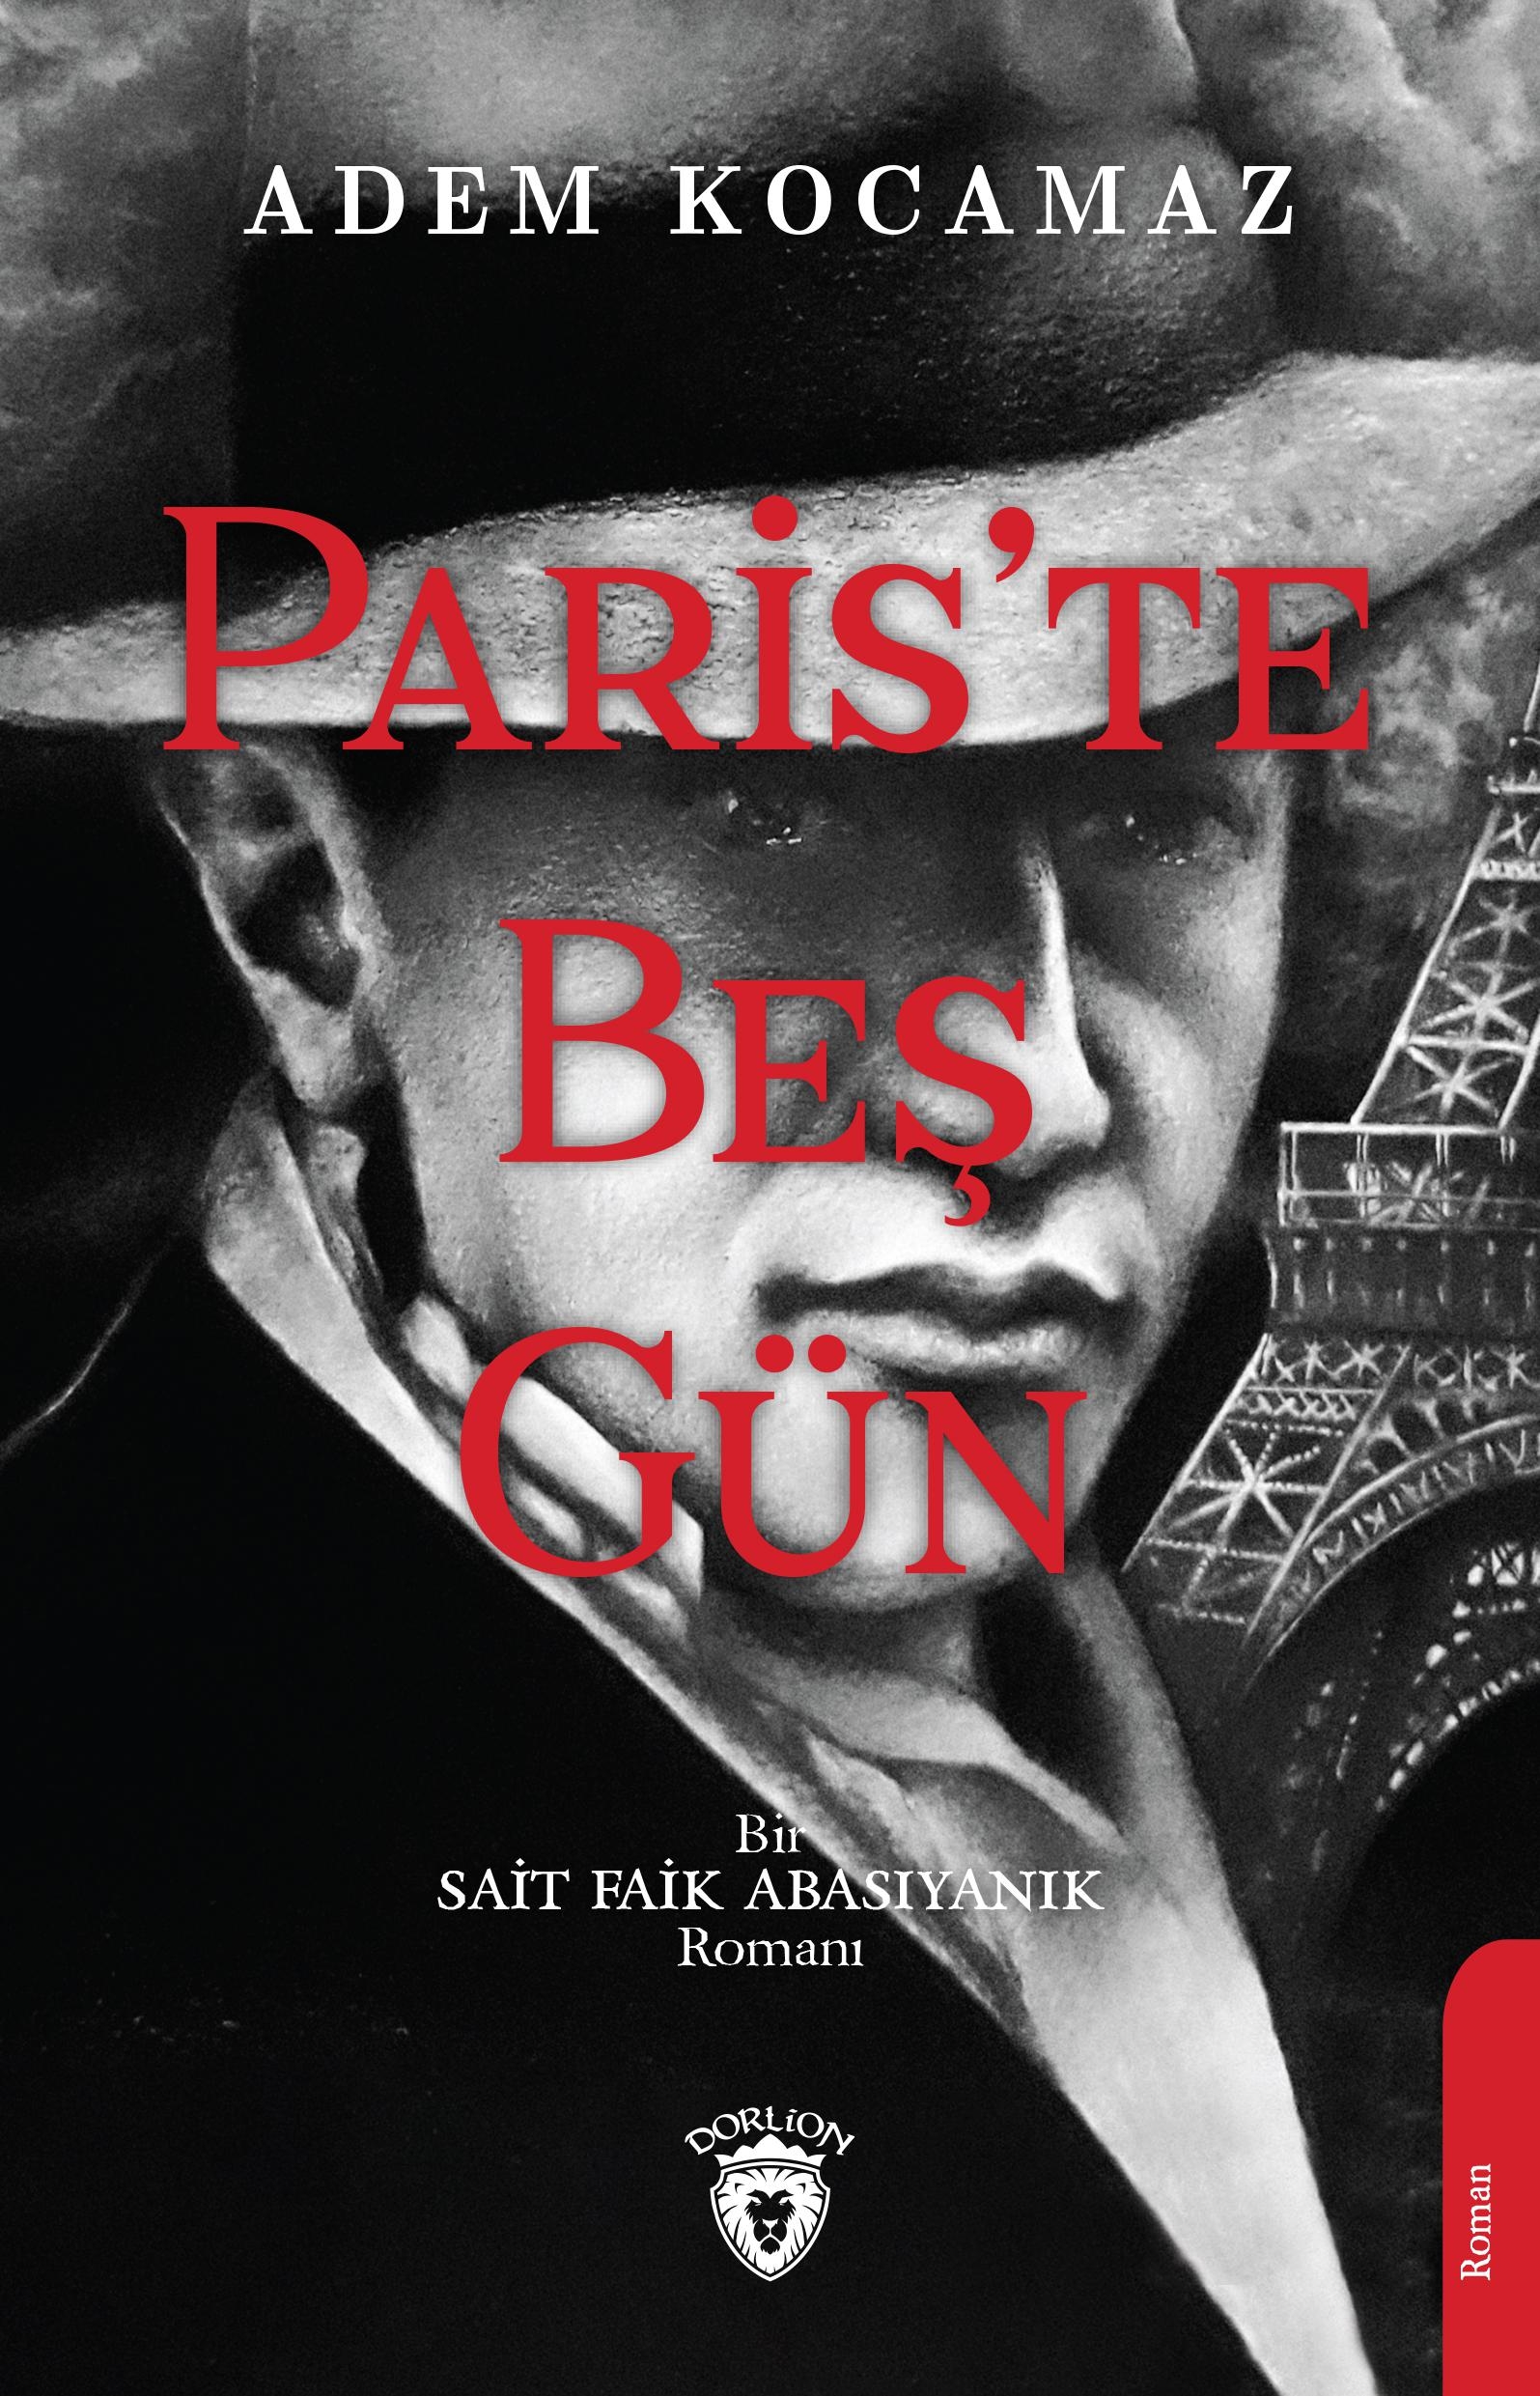 Paris Te Beş Gün Bir Sait Faik Abasıyanık Romanı